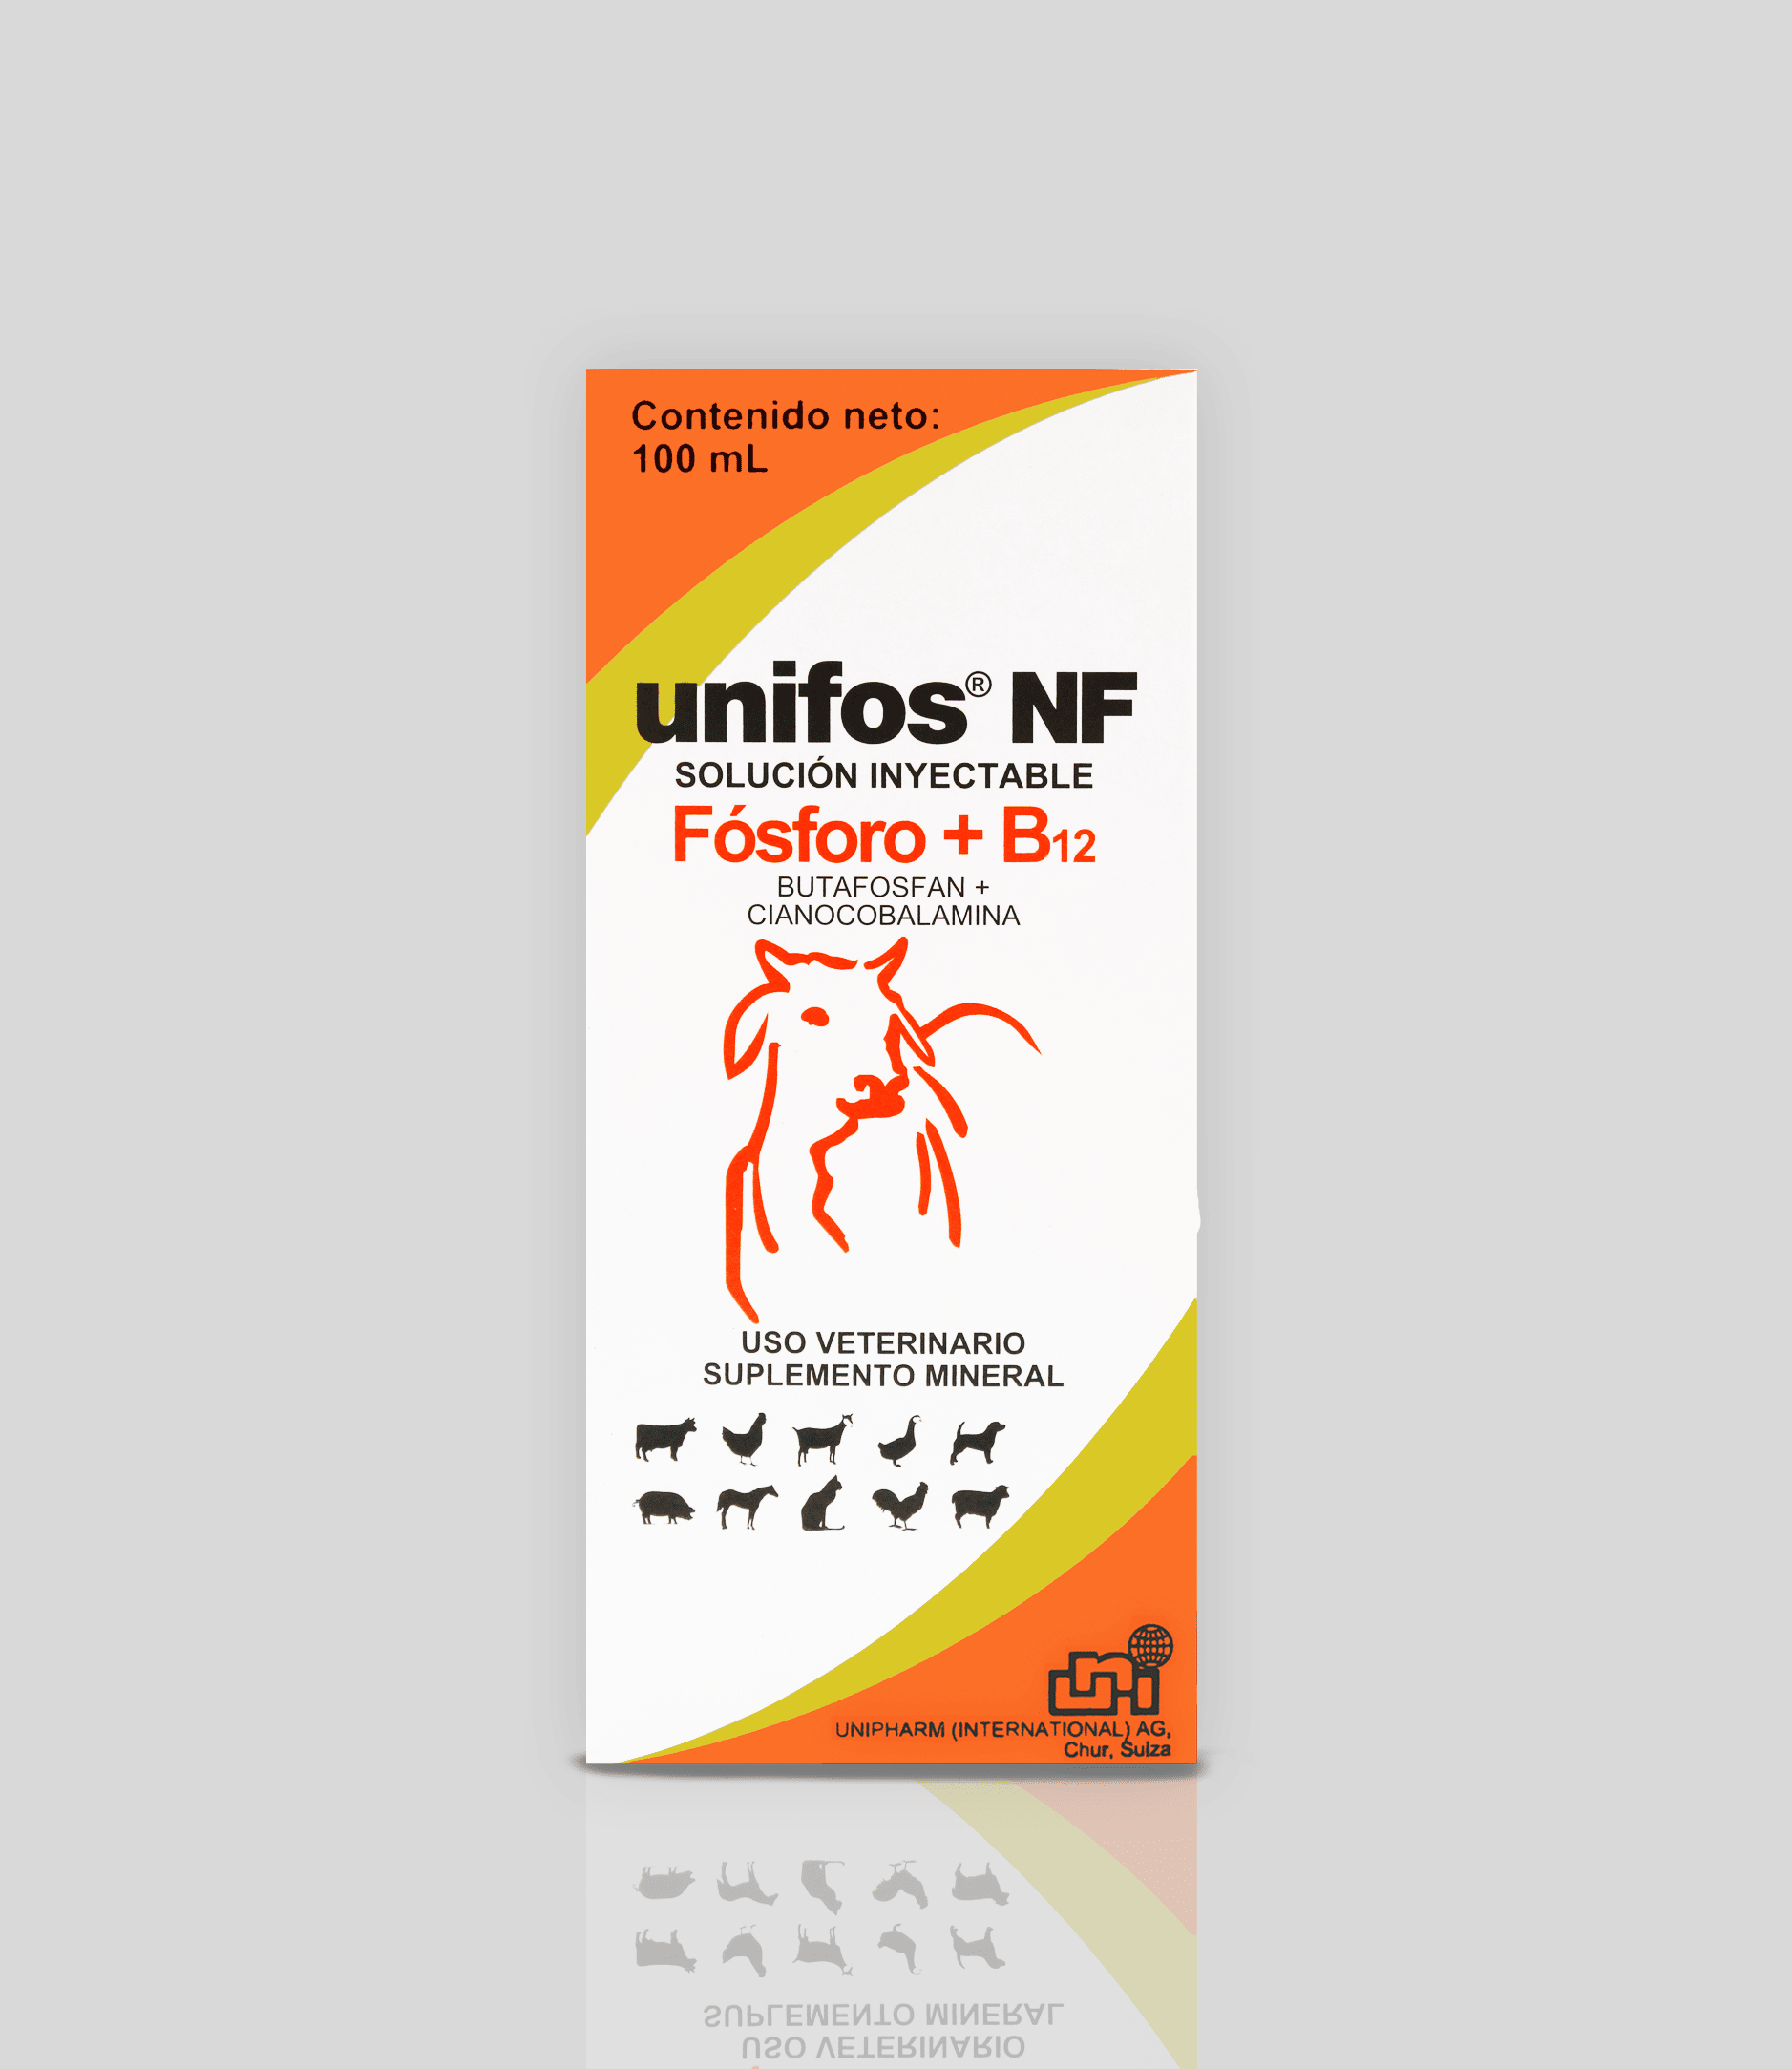 Unifos NF